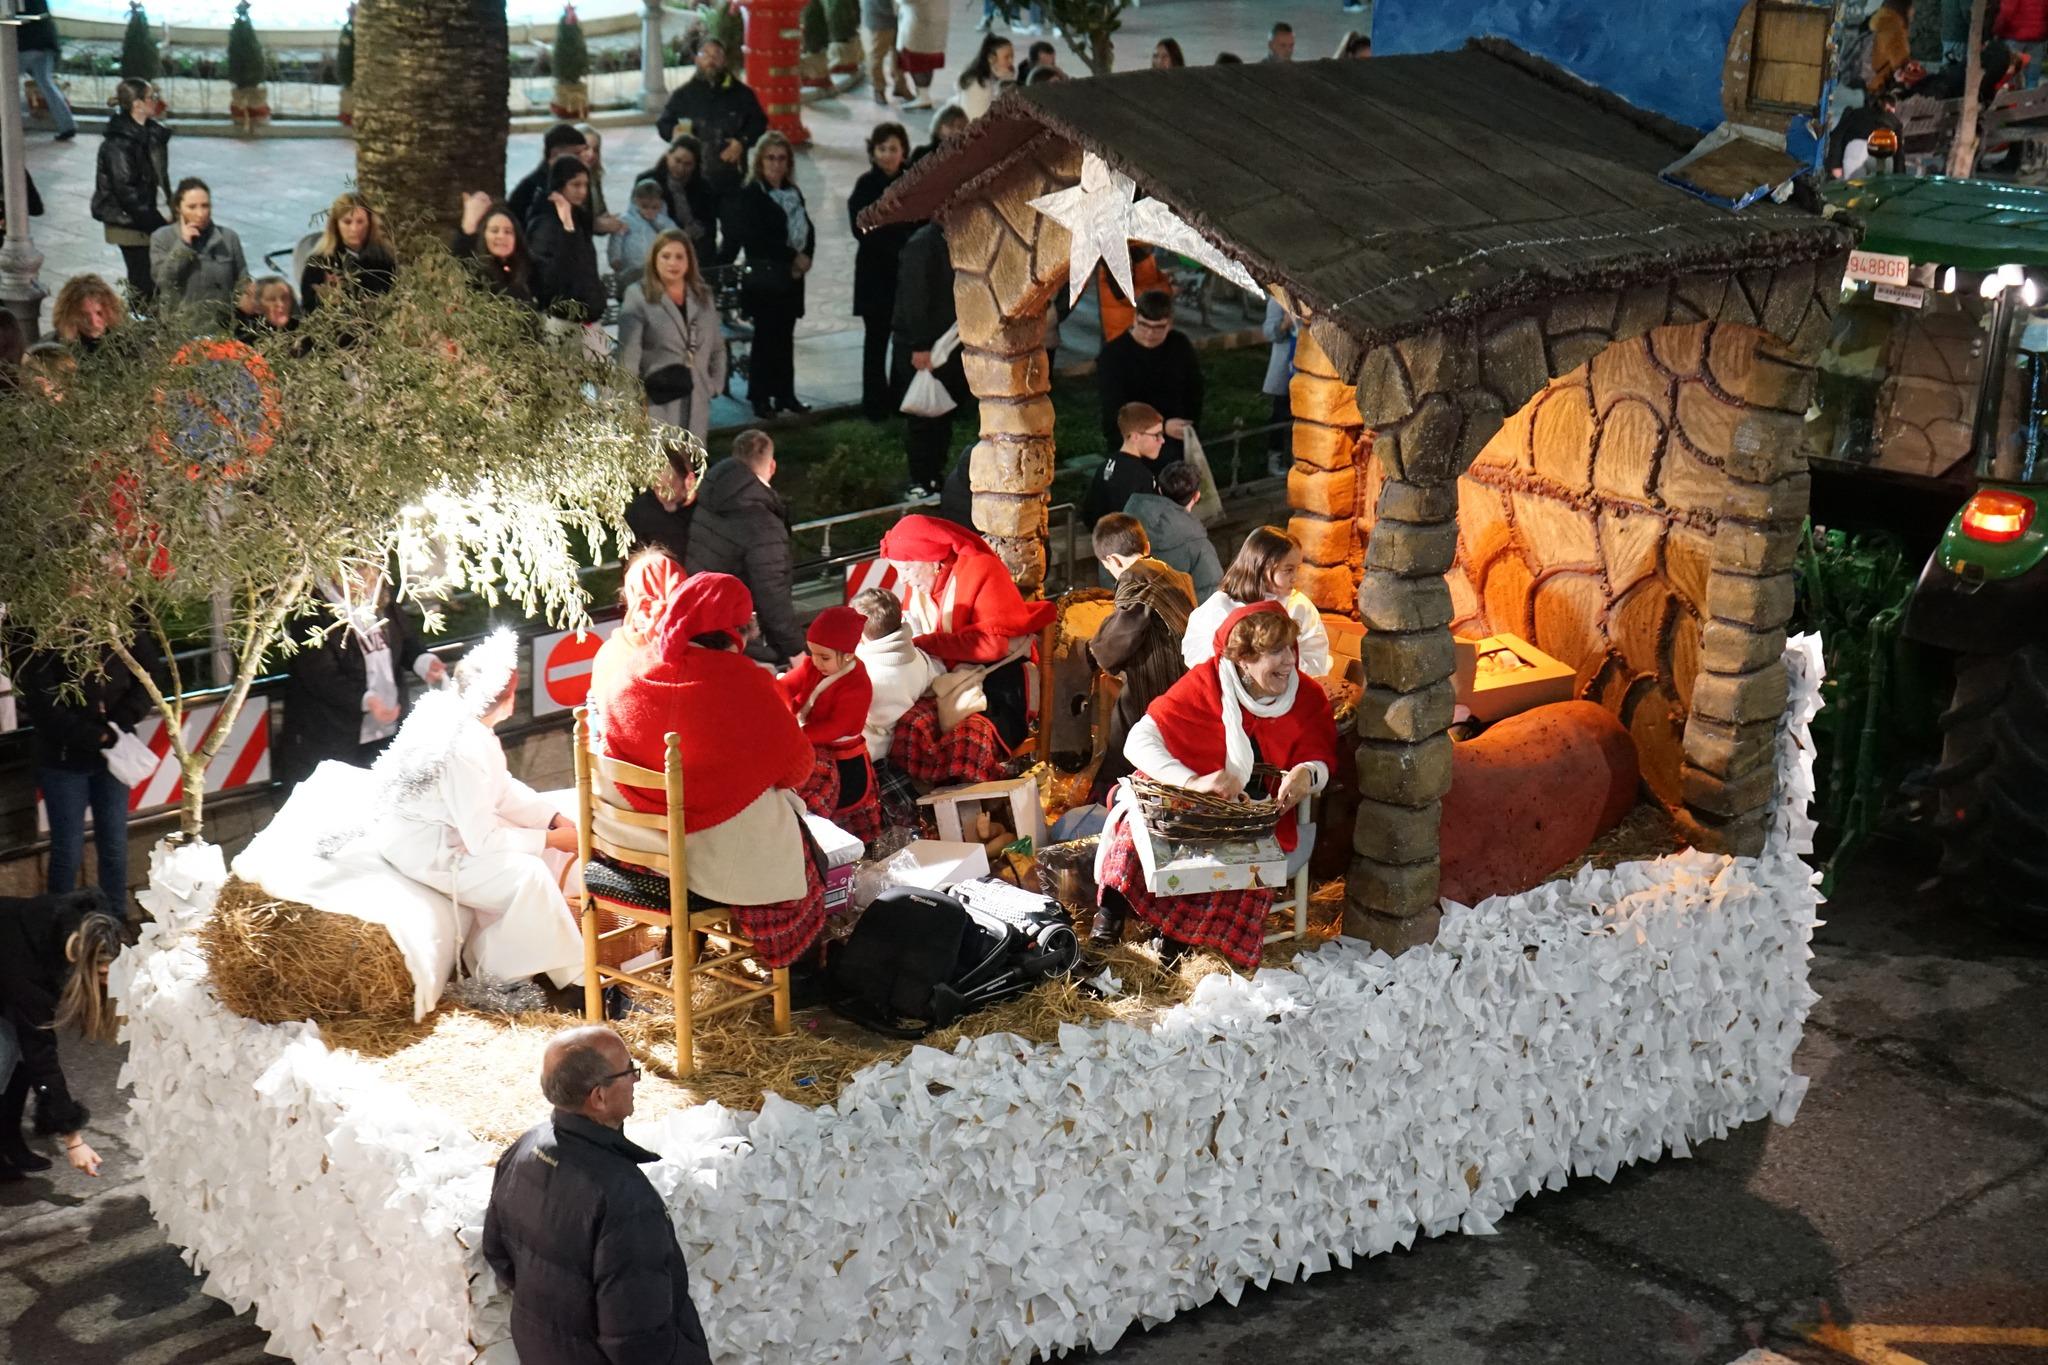 La cabalgata de Reyes Magos de Puebla, en imágenes